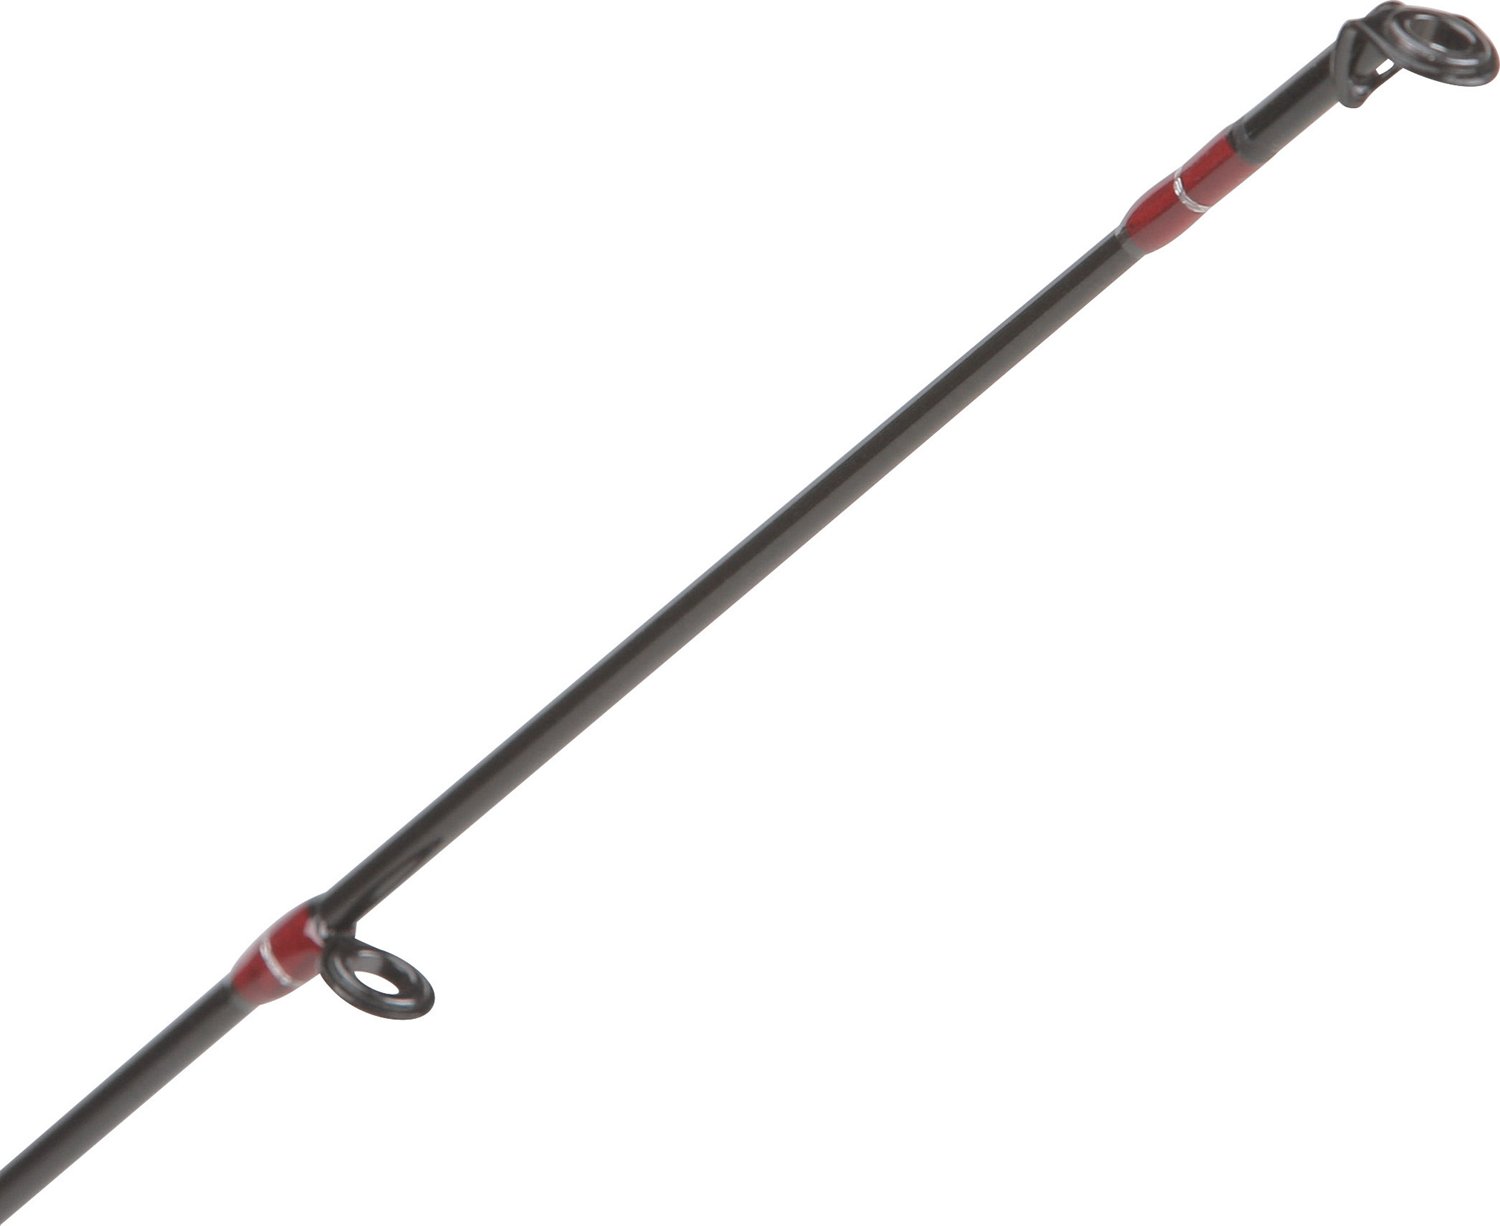 All Star ASTeam Spinning Rod, 6'8 Length, Medium Power, Fast Action